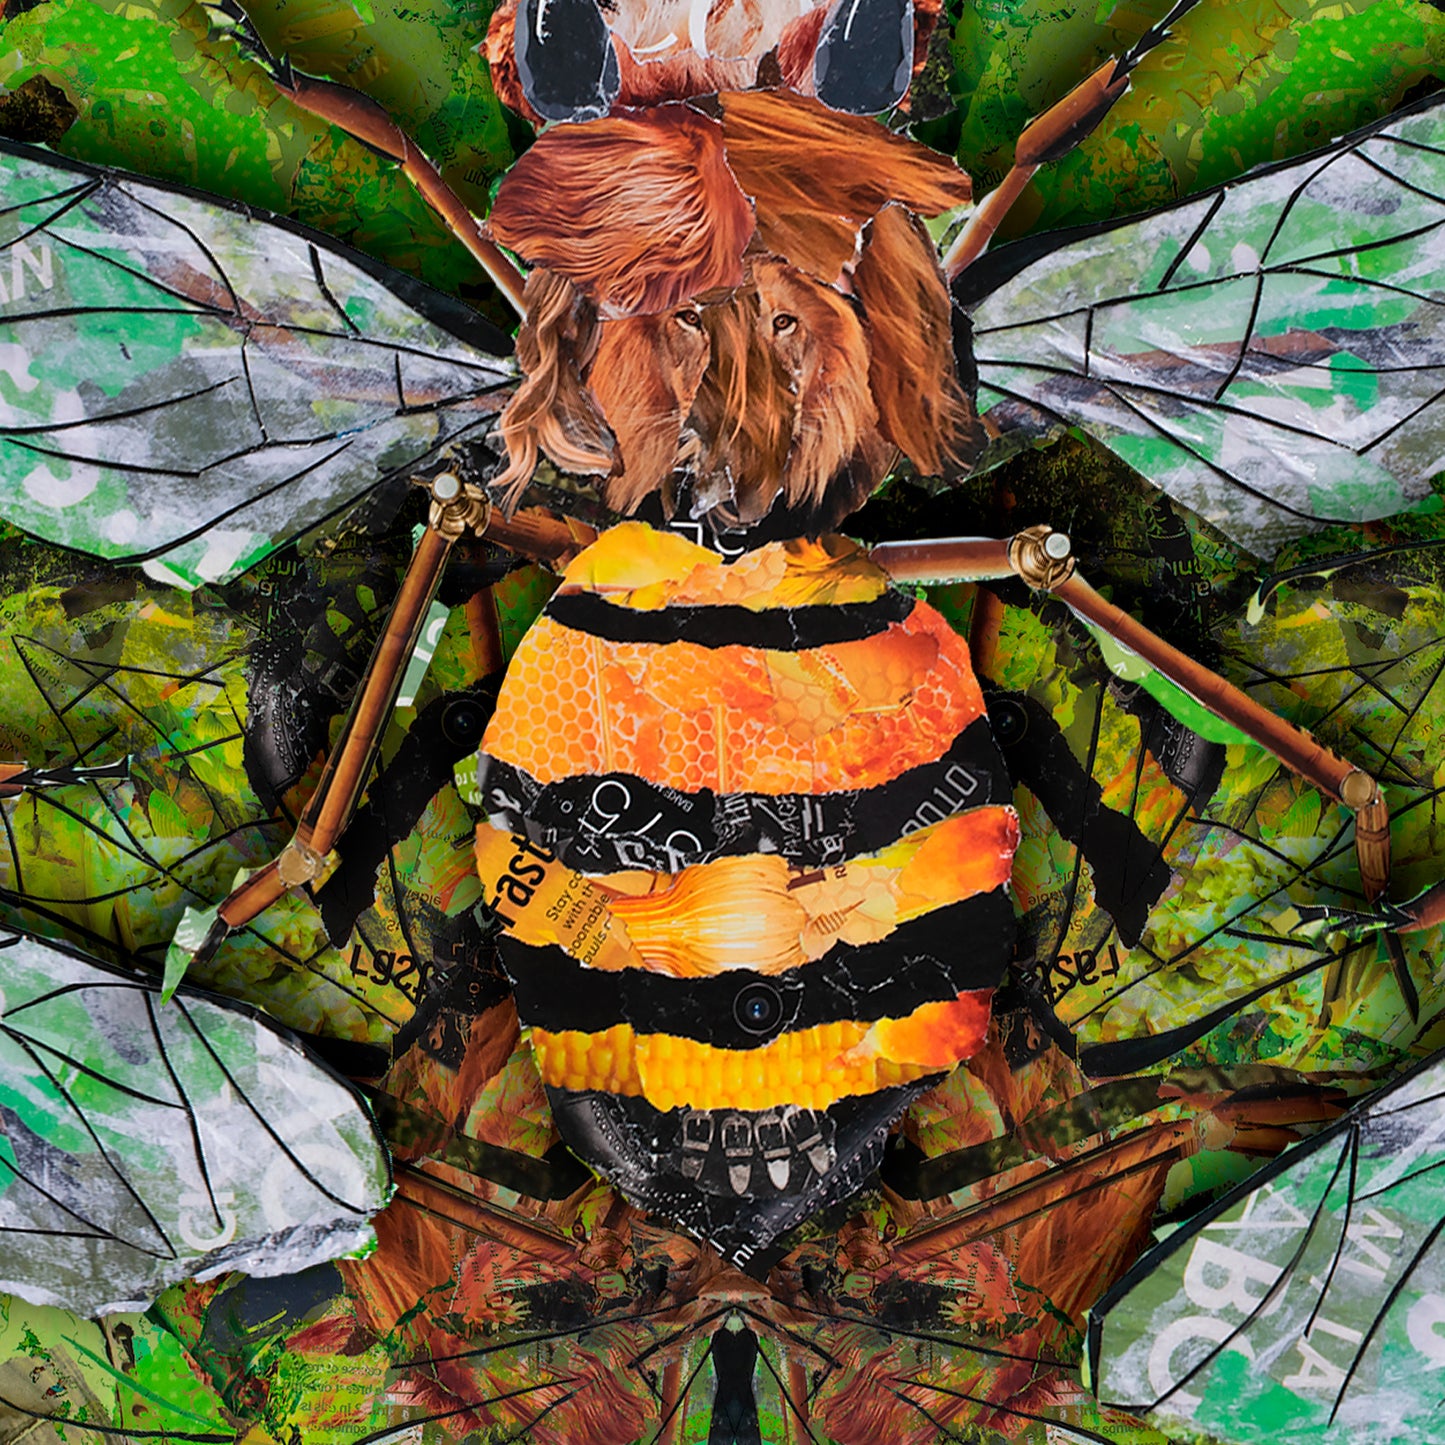 Mandala of Bees